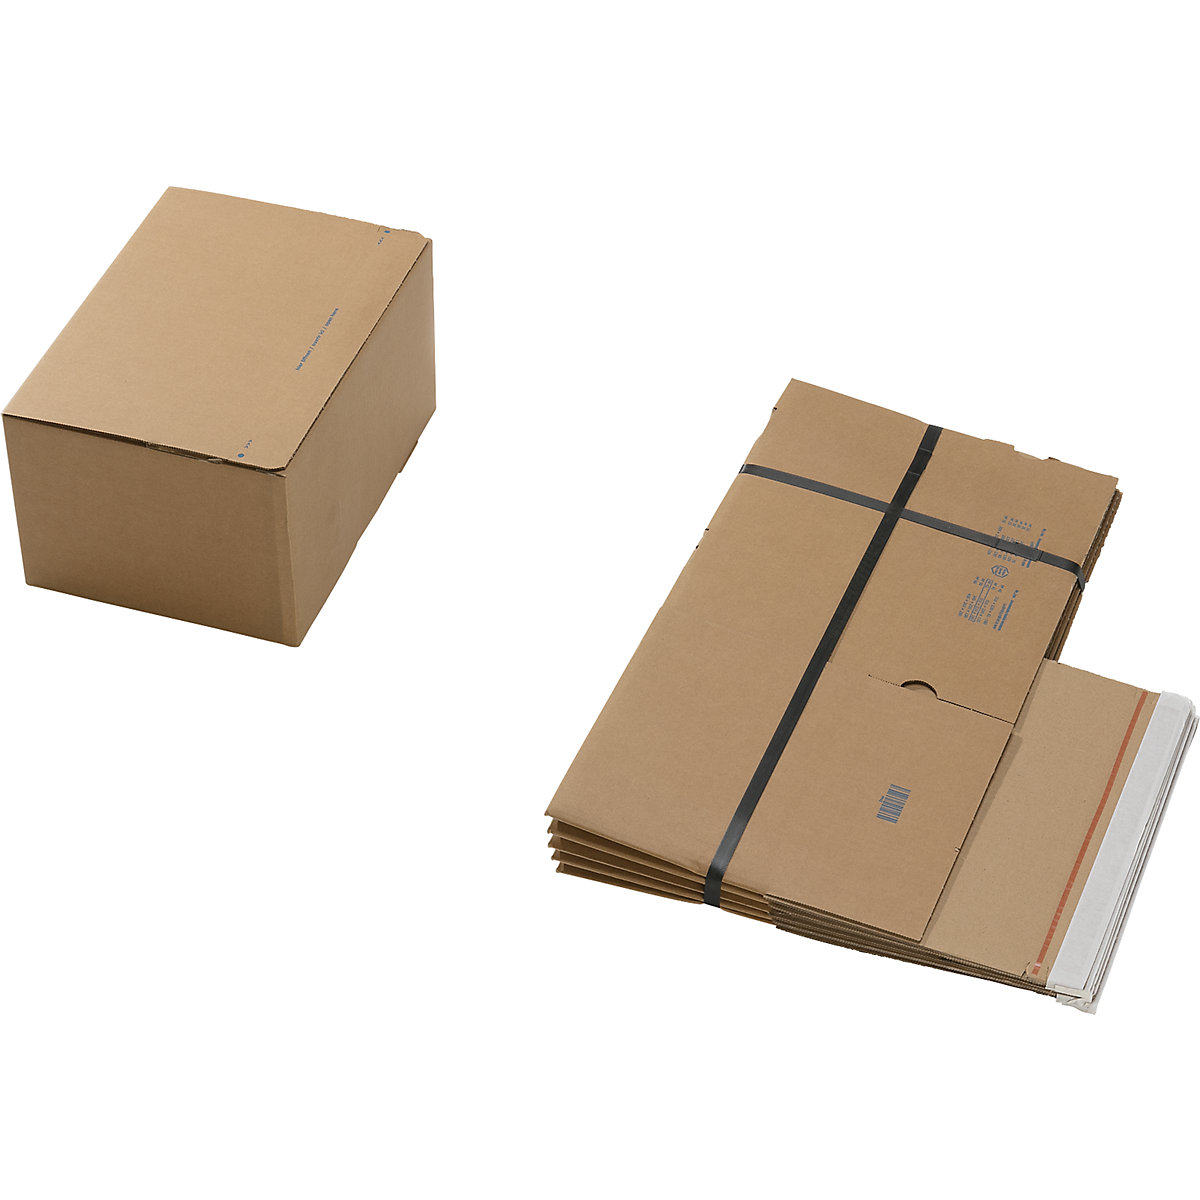 Caixa de cartão de envio, com fundo automático e fecho autocolante, dimensões interiores CxLxA 310 x 230 x 160 mm, embalagem de 100 unidades-2